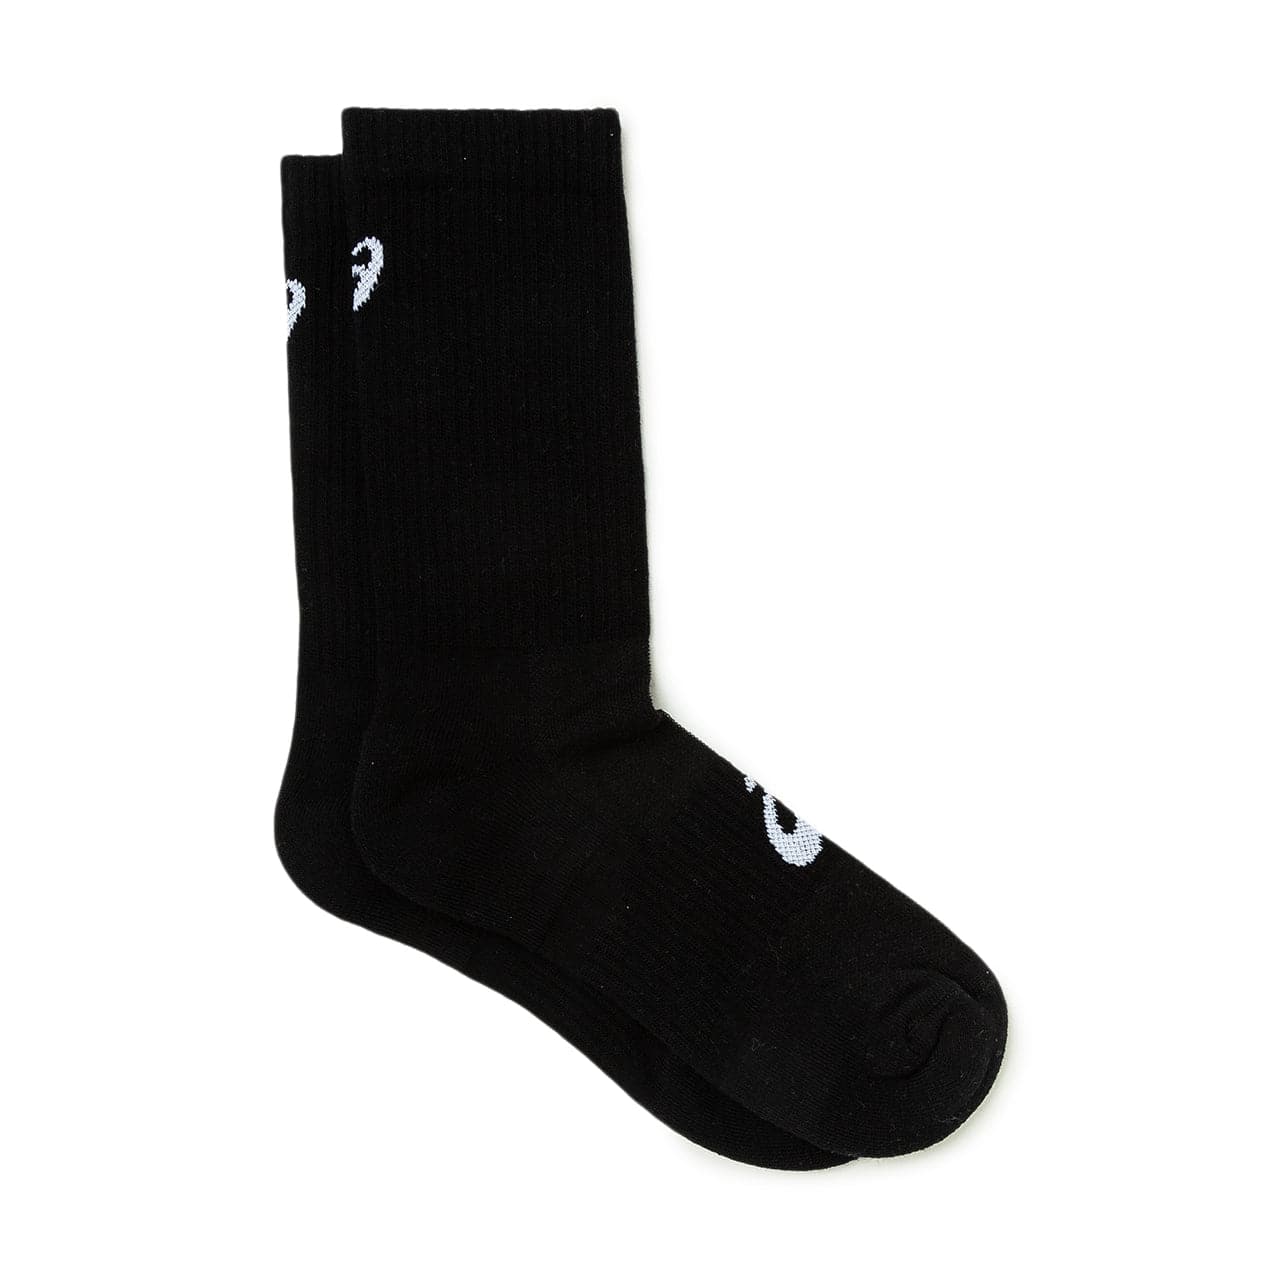 Image of Asics Sportstyle 3PPK Crew Socks (Black)